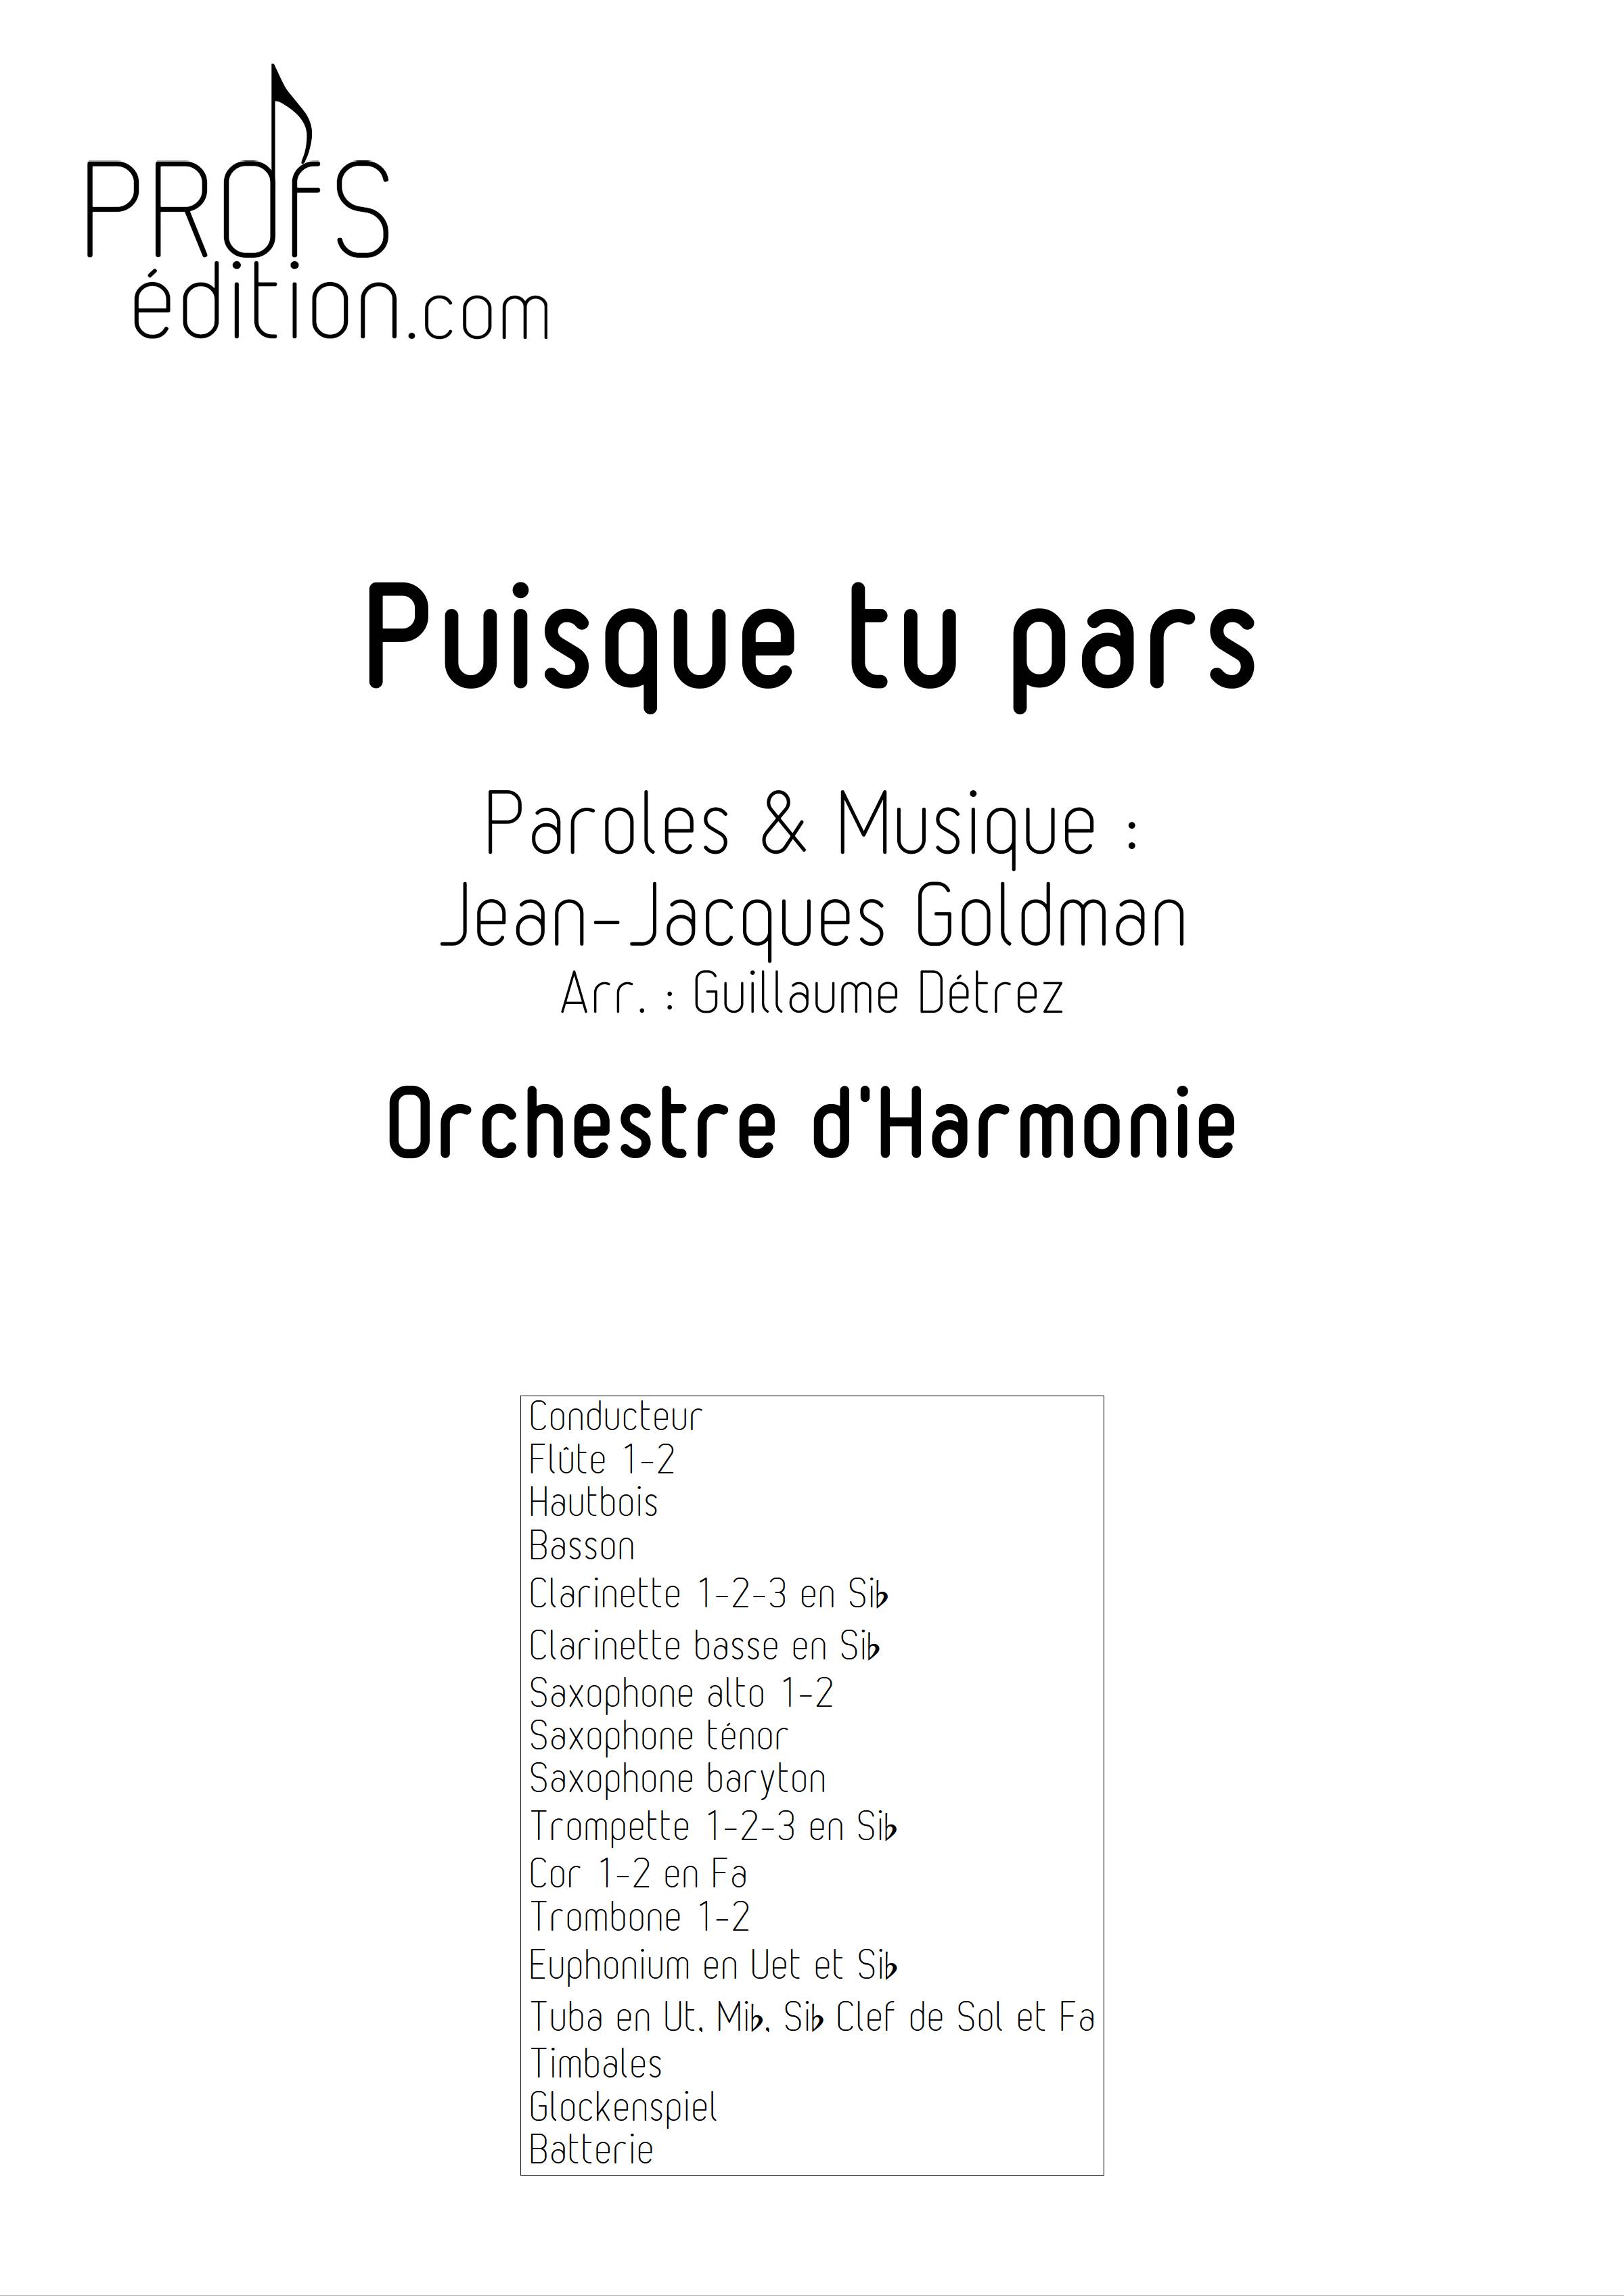 Puisque tu pars - Orchestre d'harmonie - GOLDMAN J. J. - front page